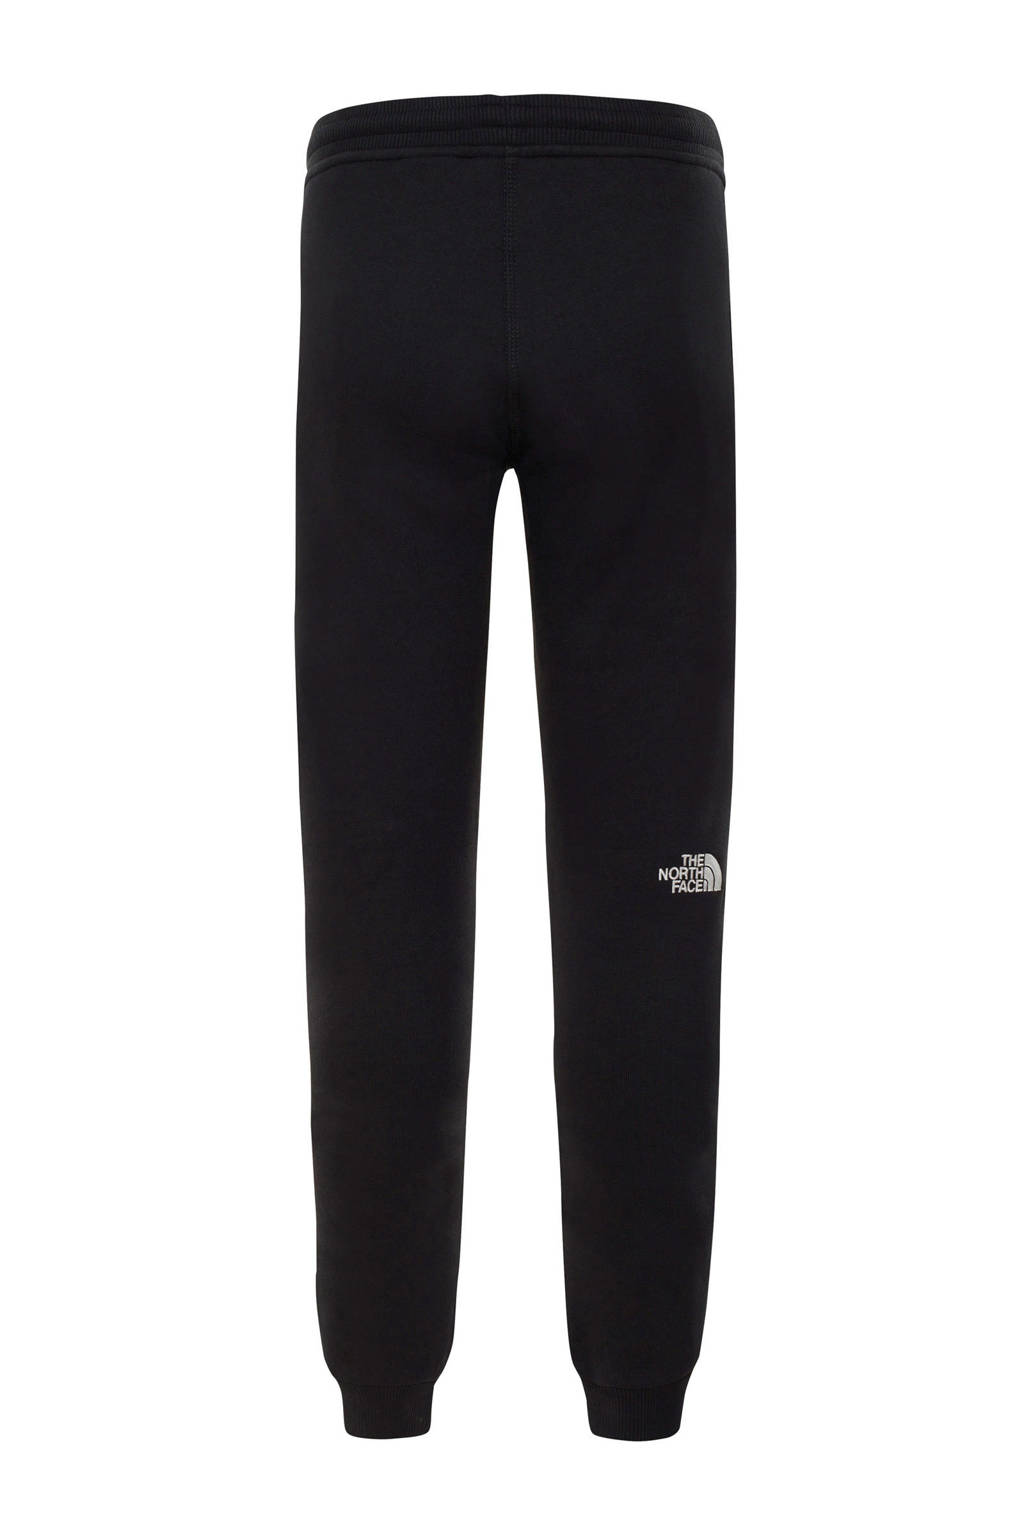 The North Face regular fit joggingbroek Fleece Pant met logo zwart, Zwart